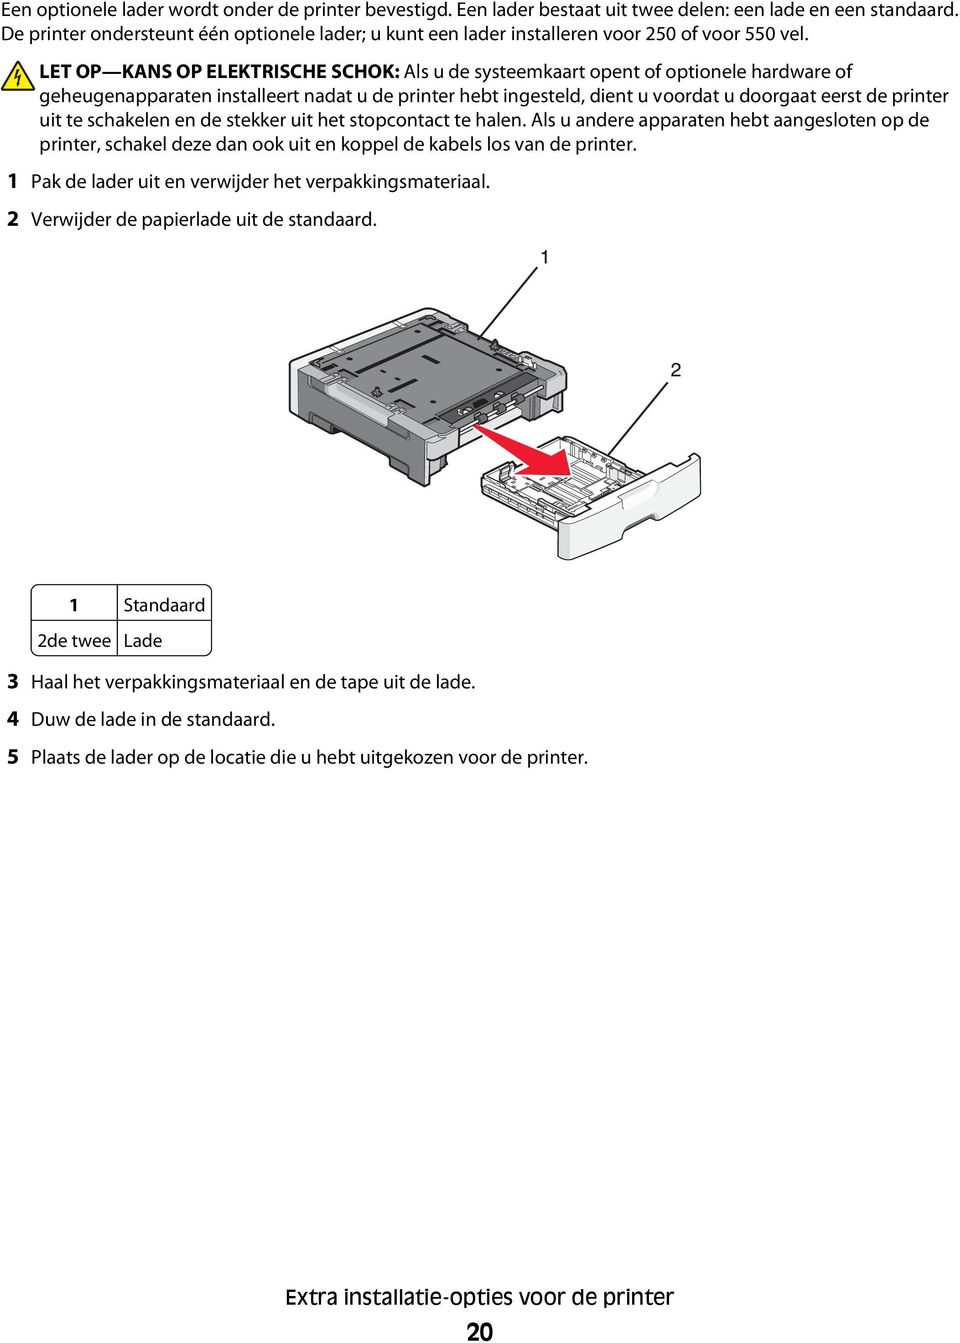 LET OP KANS OP ELEKTRISCHE SCHOK: Als u de systeemkaart opent of optionele hardware of geheugenapparaten installeert nadat u de printer hebt ingesteld, dient u voordat u doorgaat eerst de printer uit